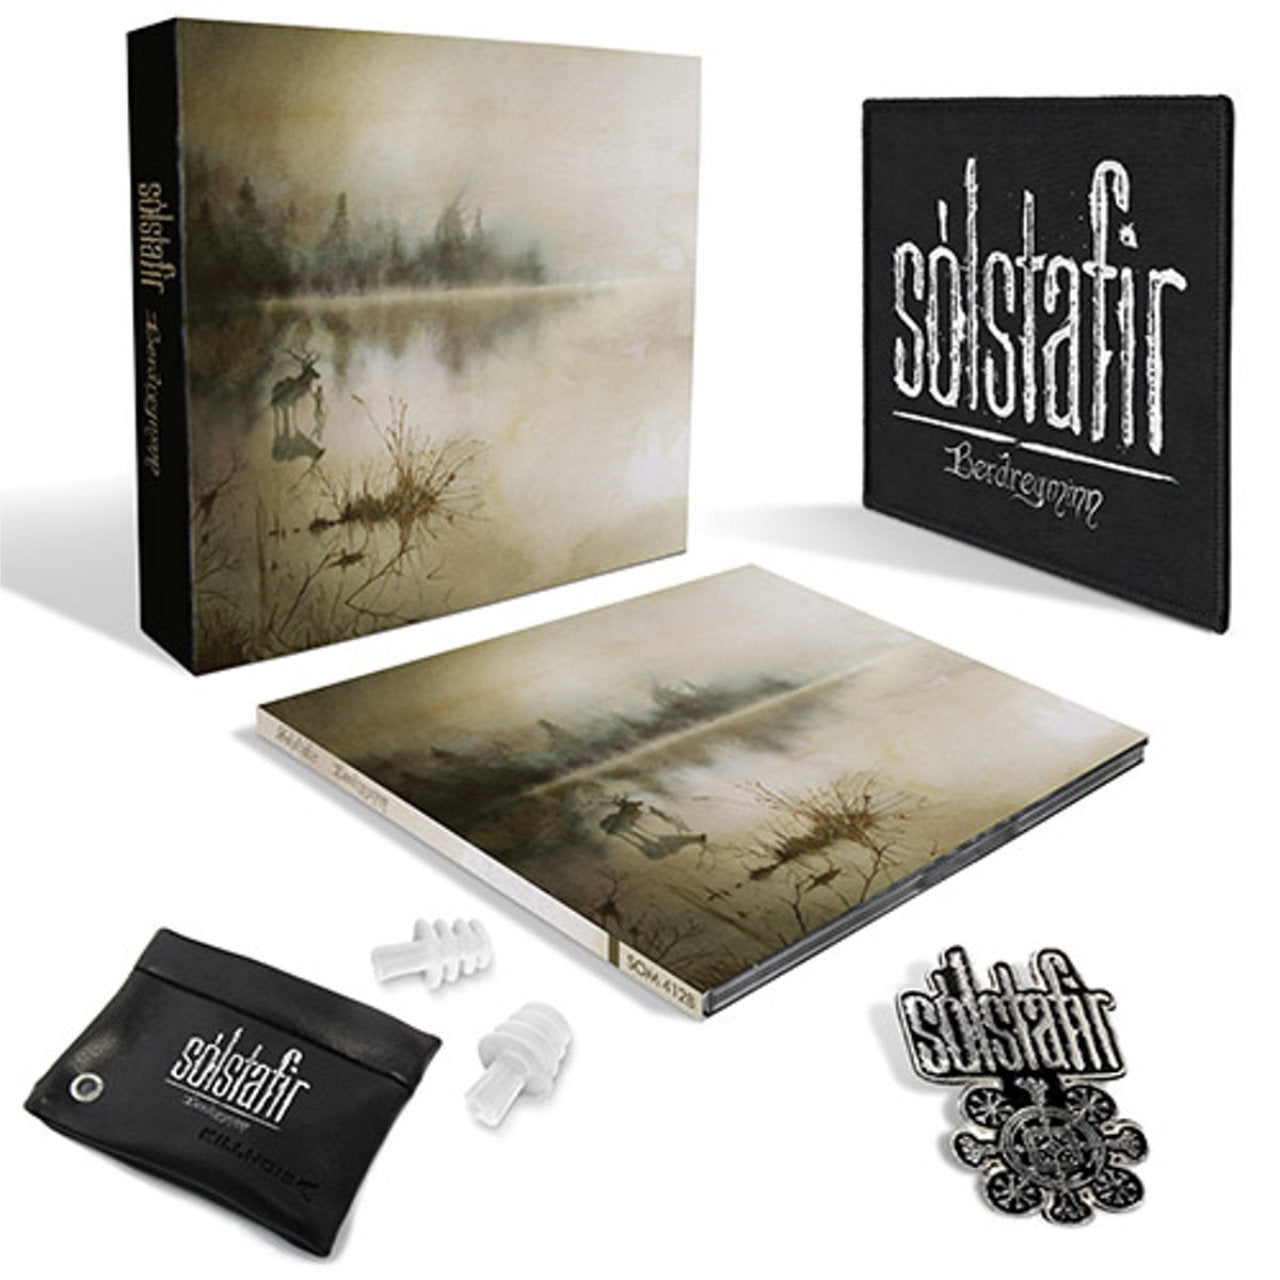 Solstafir - Berdreyminn (Deluxe Box Edition) (CD)